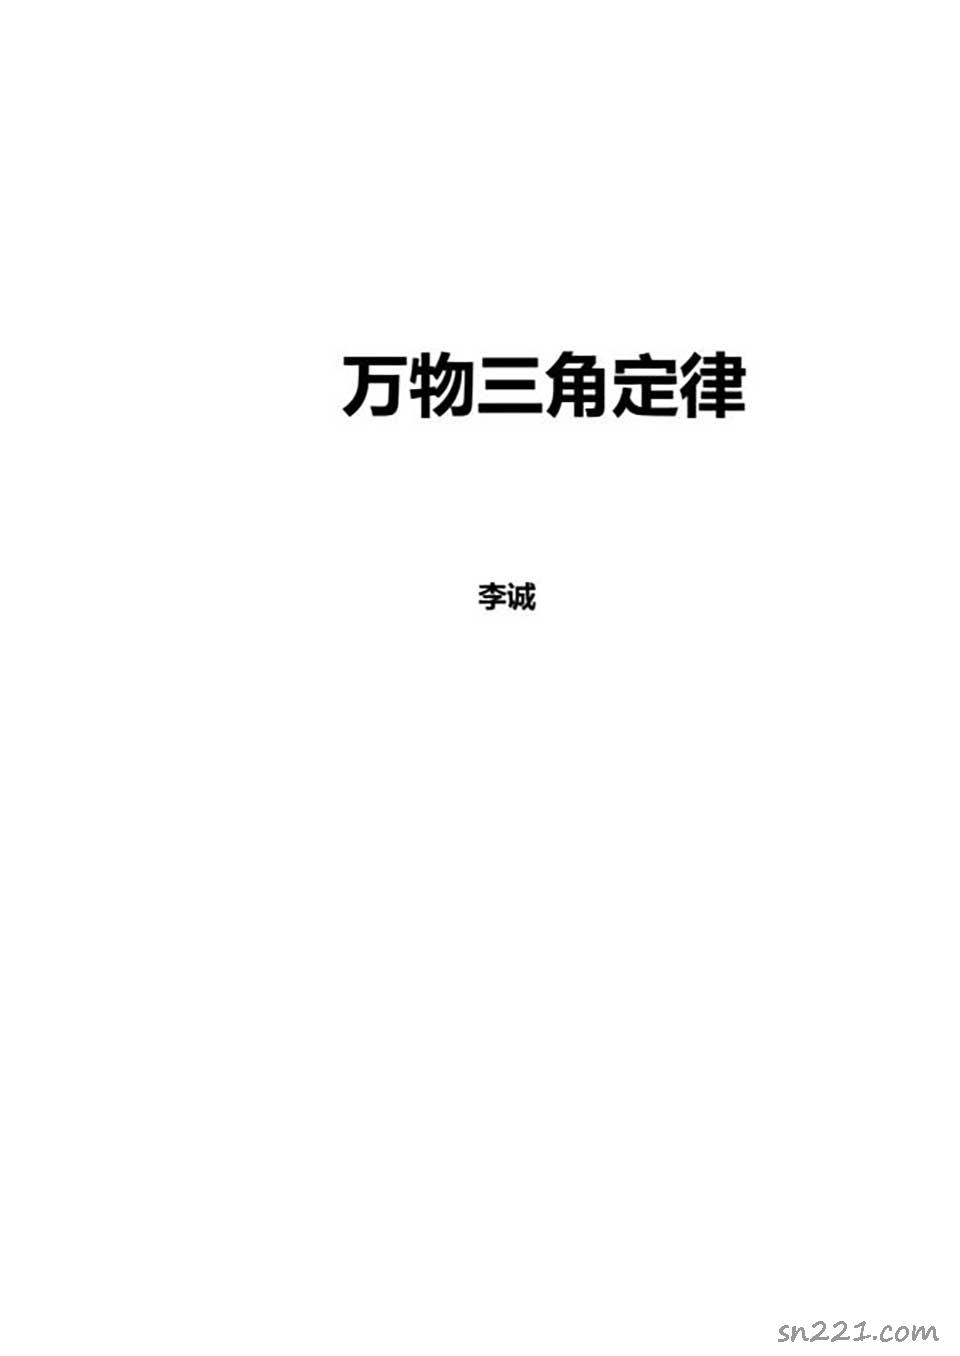 蘇方行-萬事三角定律面授班整理版30頁.pdf